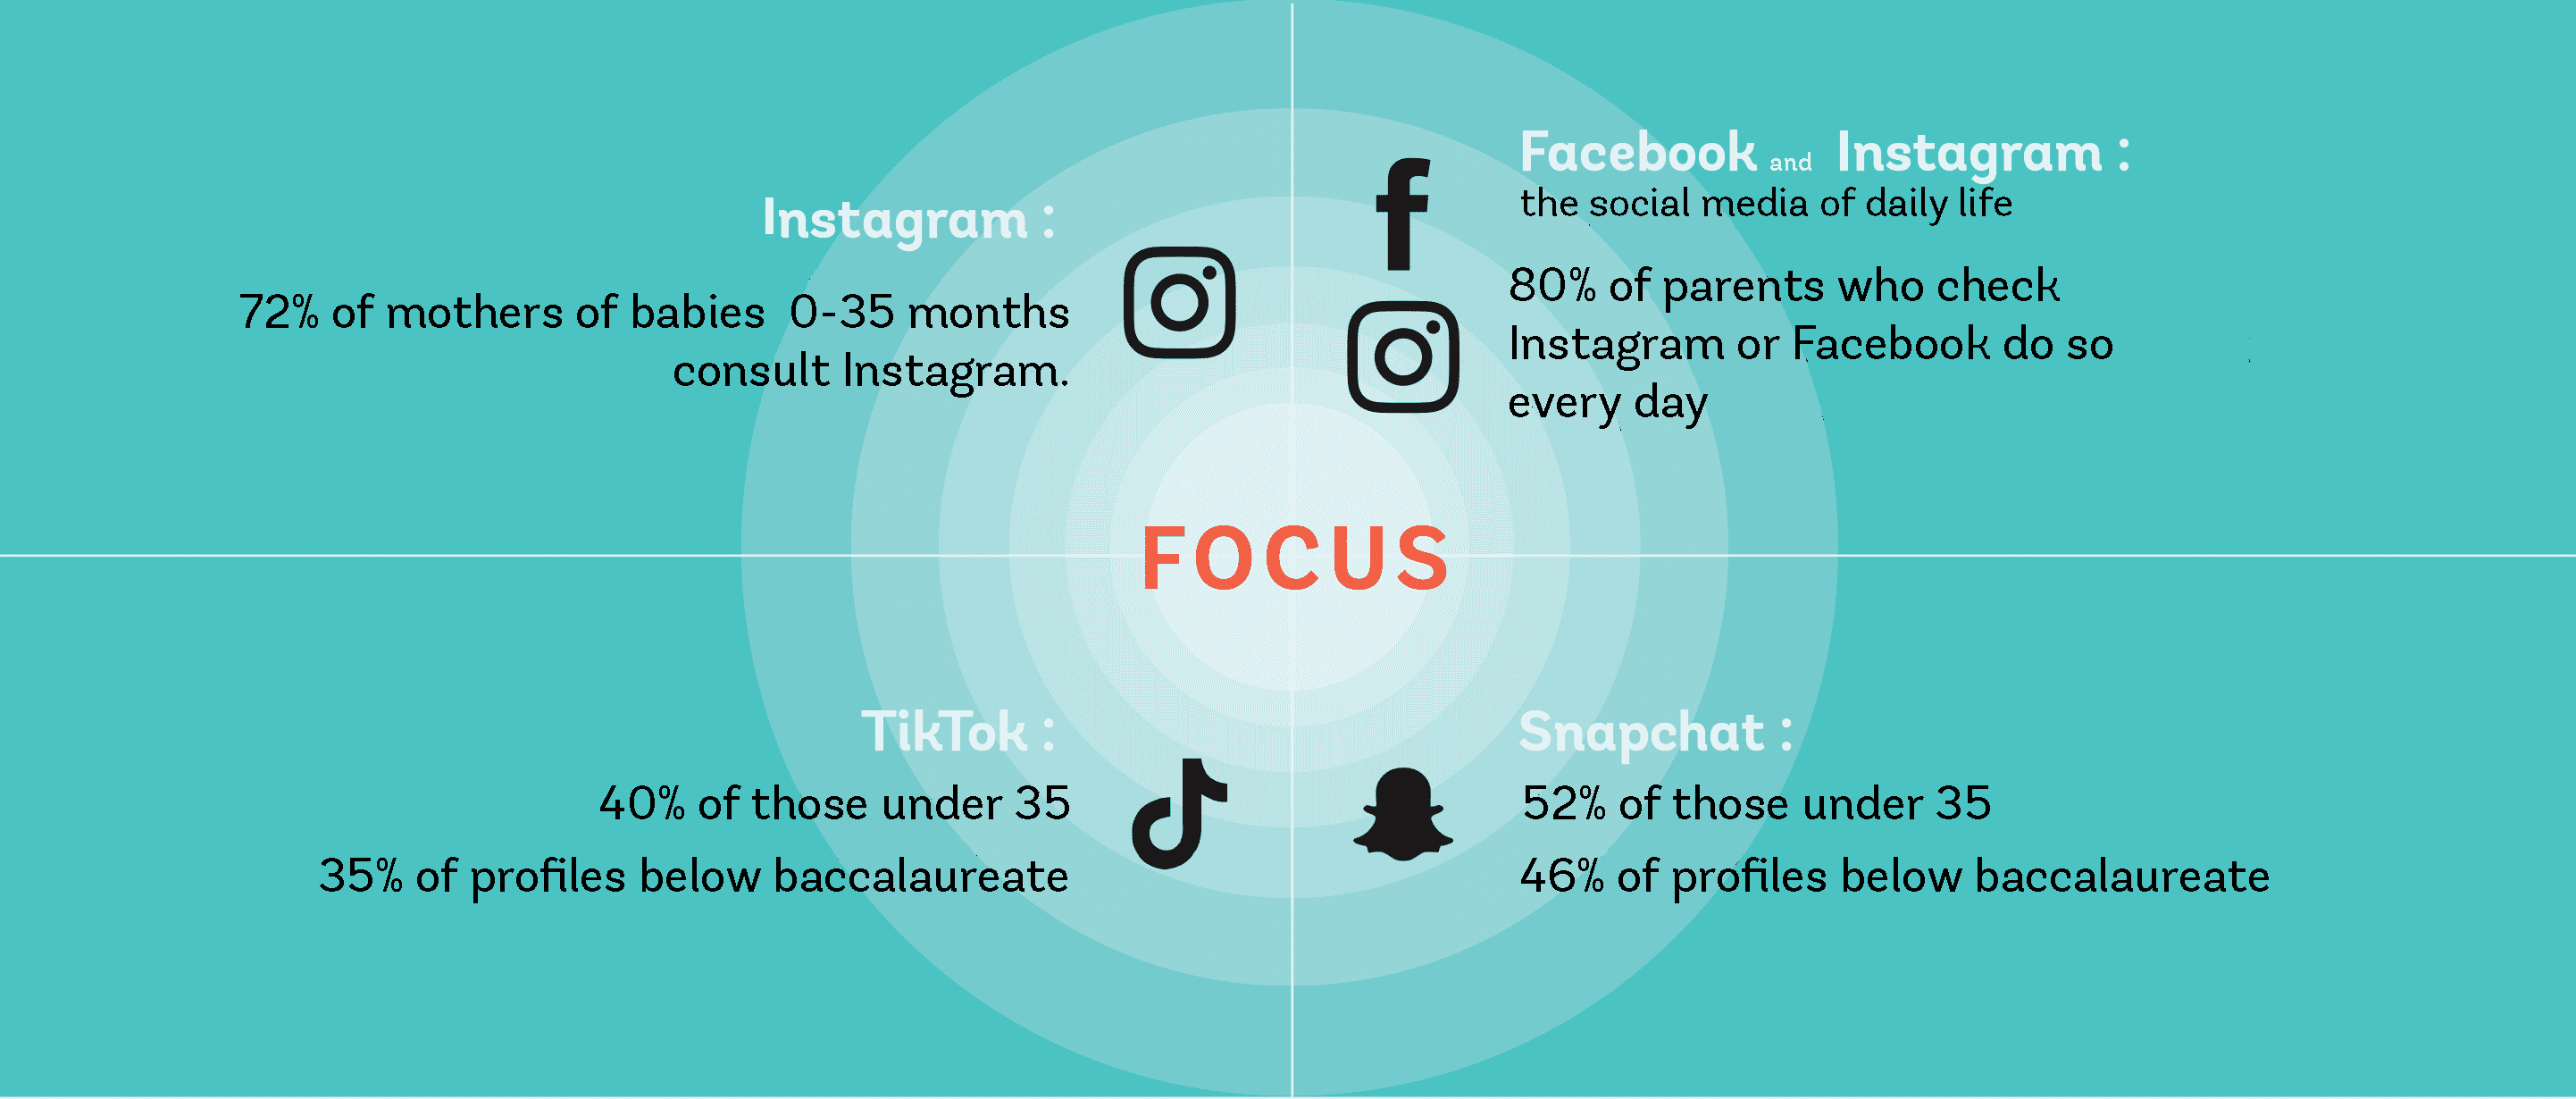 focus-social-media-parents